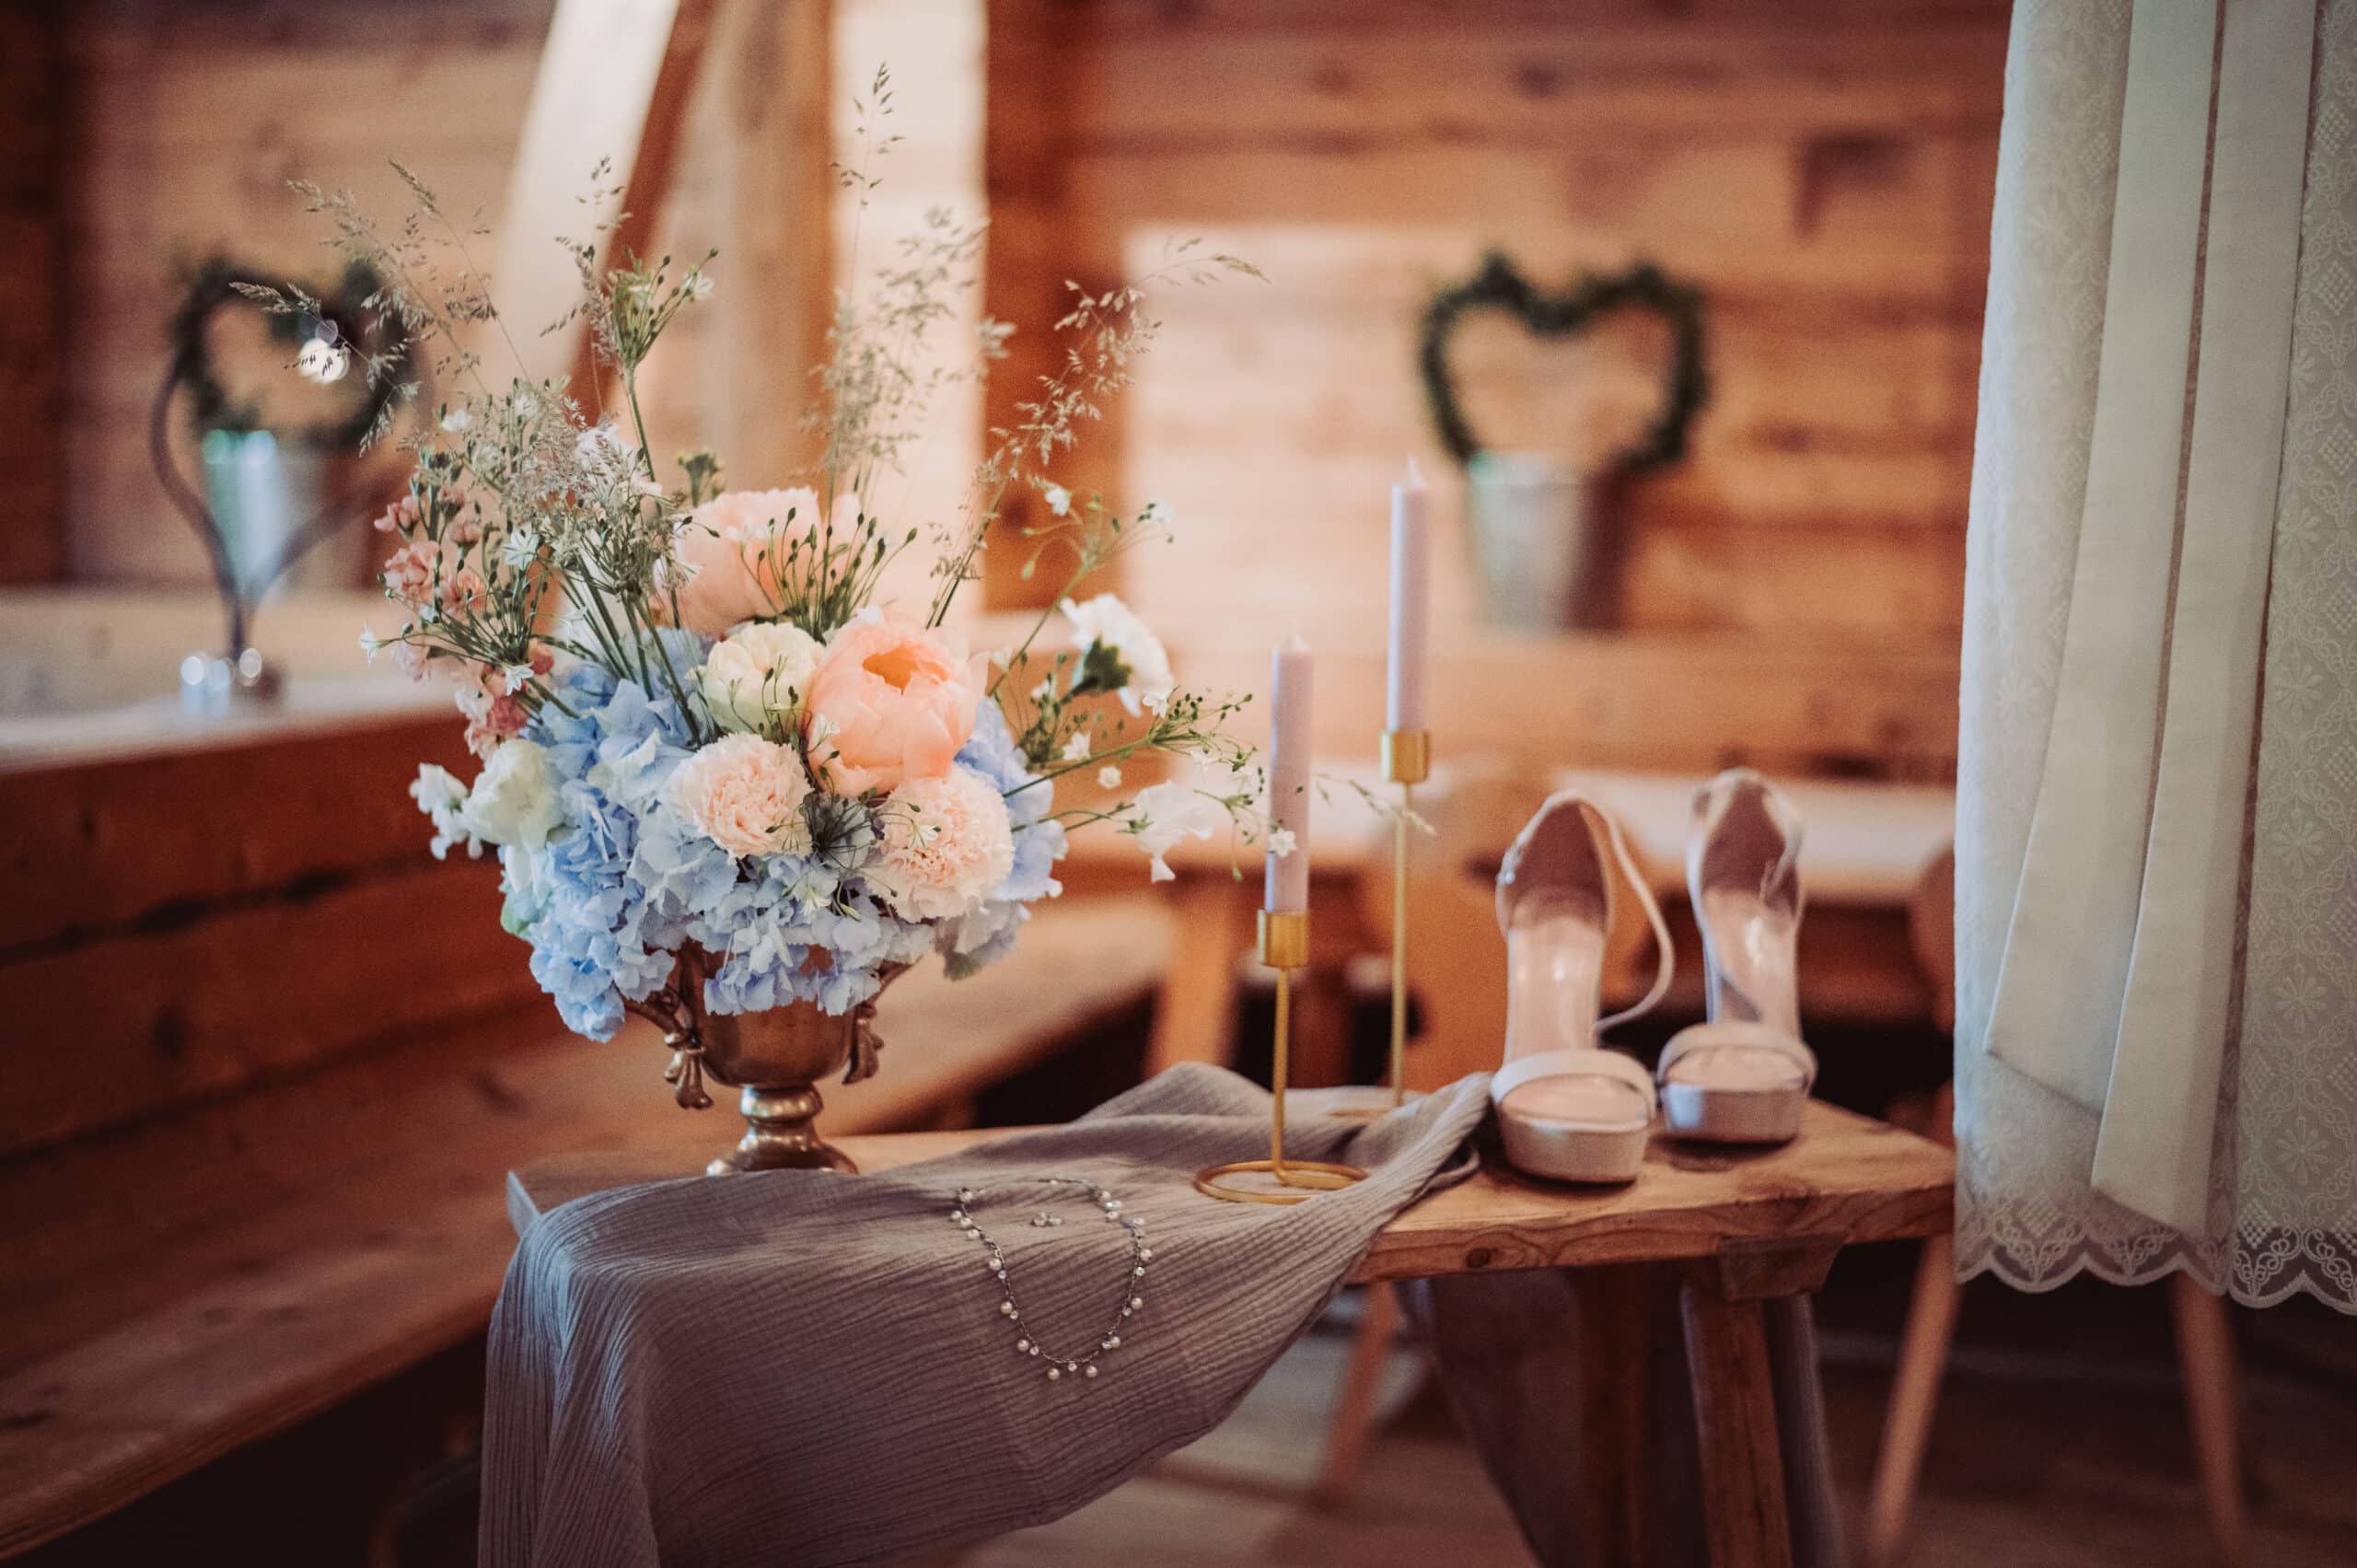 Das Getting Ready der Braut auf der Meckatzer Sportalp. Eine Nahaufnahme eines Beistelltisches mit einem Blumenstrauß, Kerzen und den Schuhen der Braut.